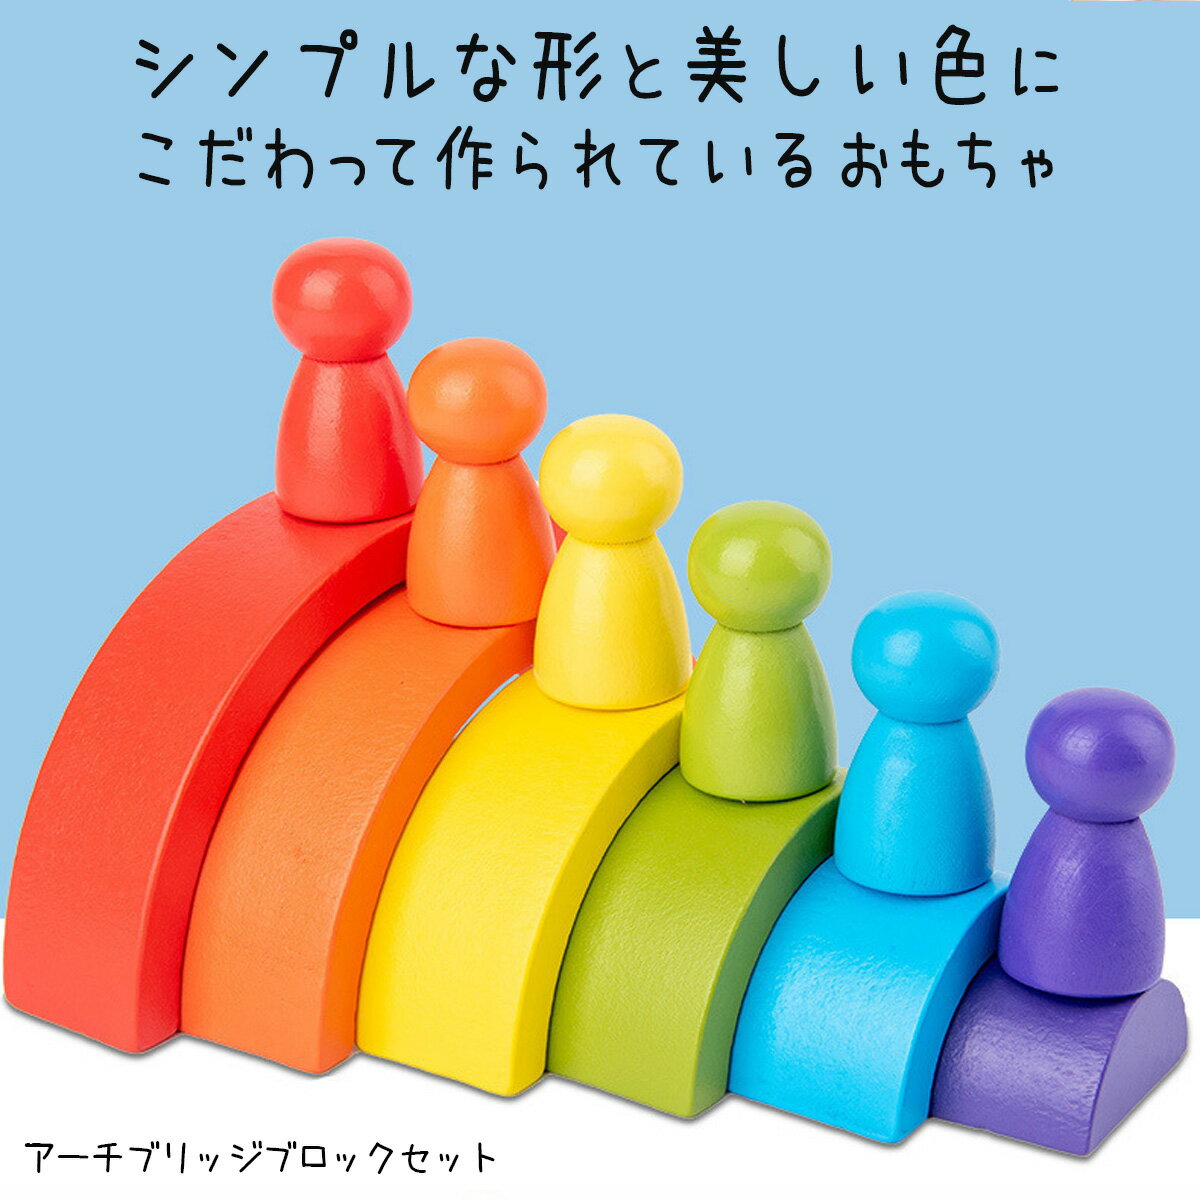 おもちゃ アーチブリッジブロックセット 積み木ブロック 虹 木製のおもちゃ 玩具　形状 分類 ゲーム 学習 木製 アセンブリ パズルゲーム ピース